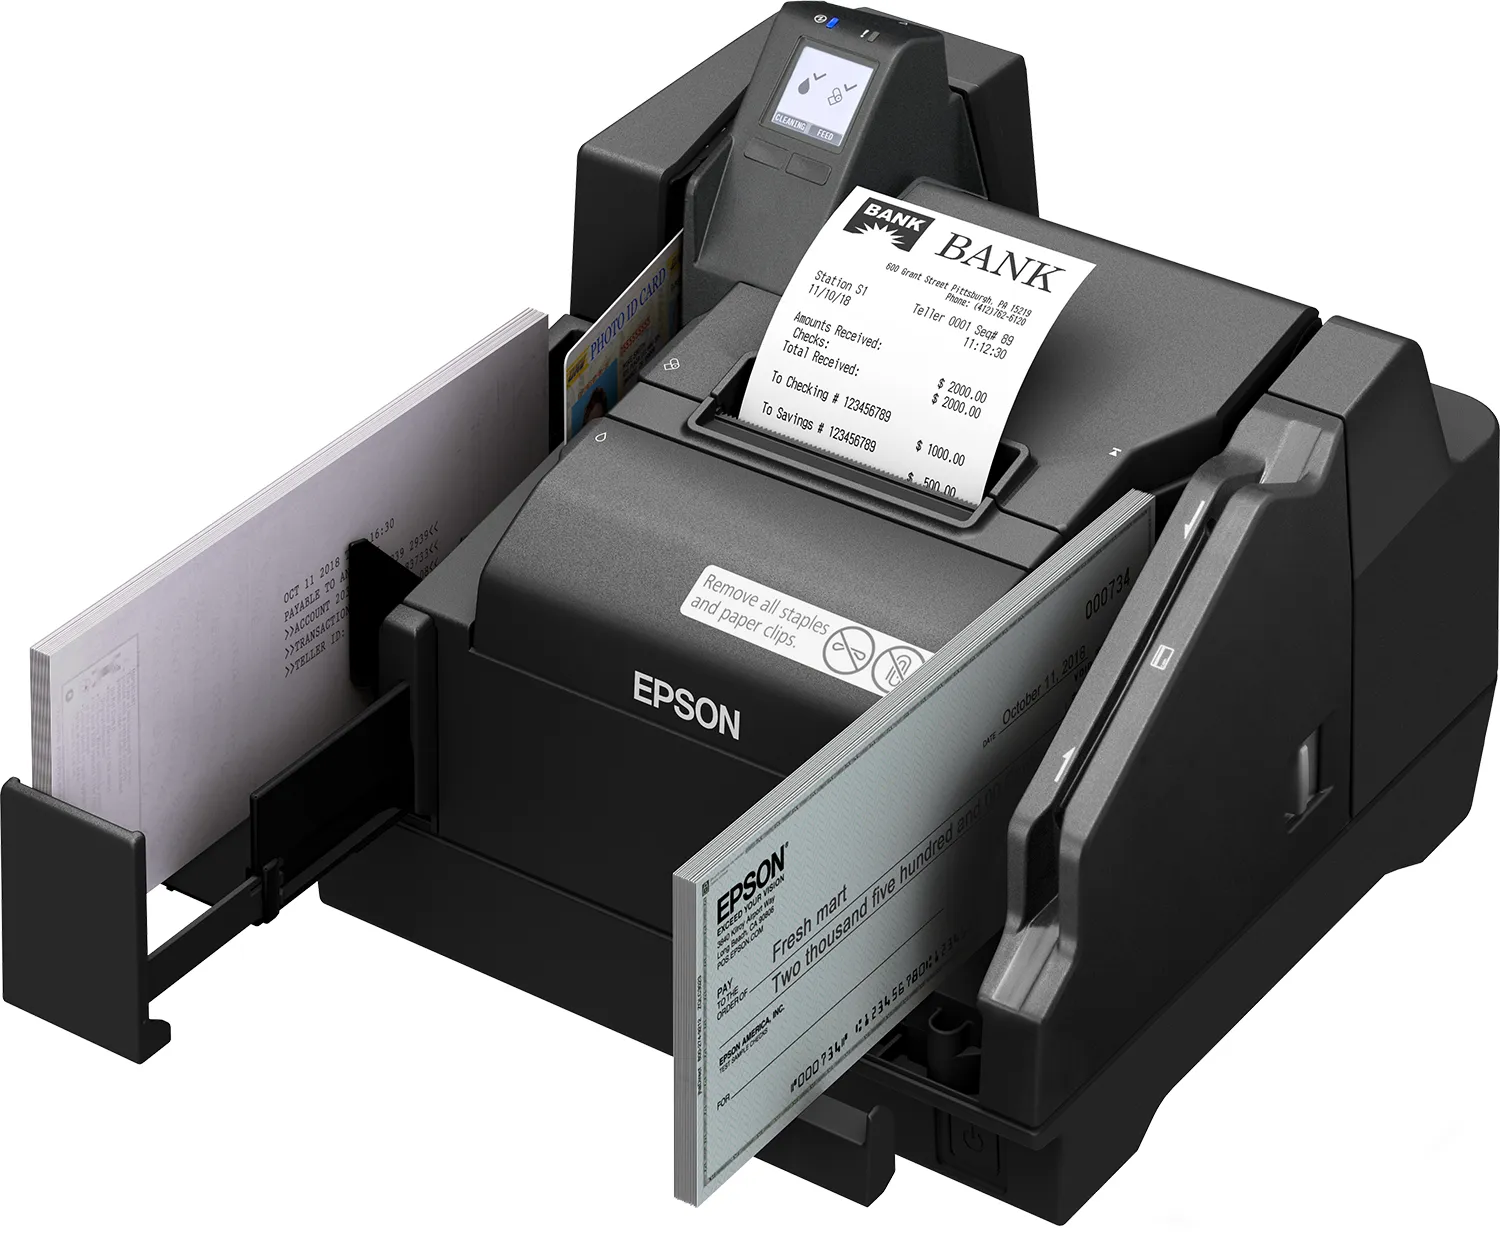 Revendeur officiel Autre Imprimante Epson TM-S9000II-MJ (012): 130DPM, 2 pockets